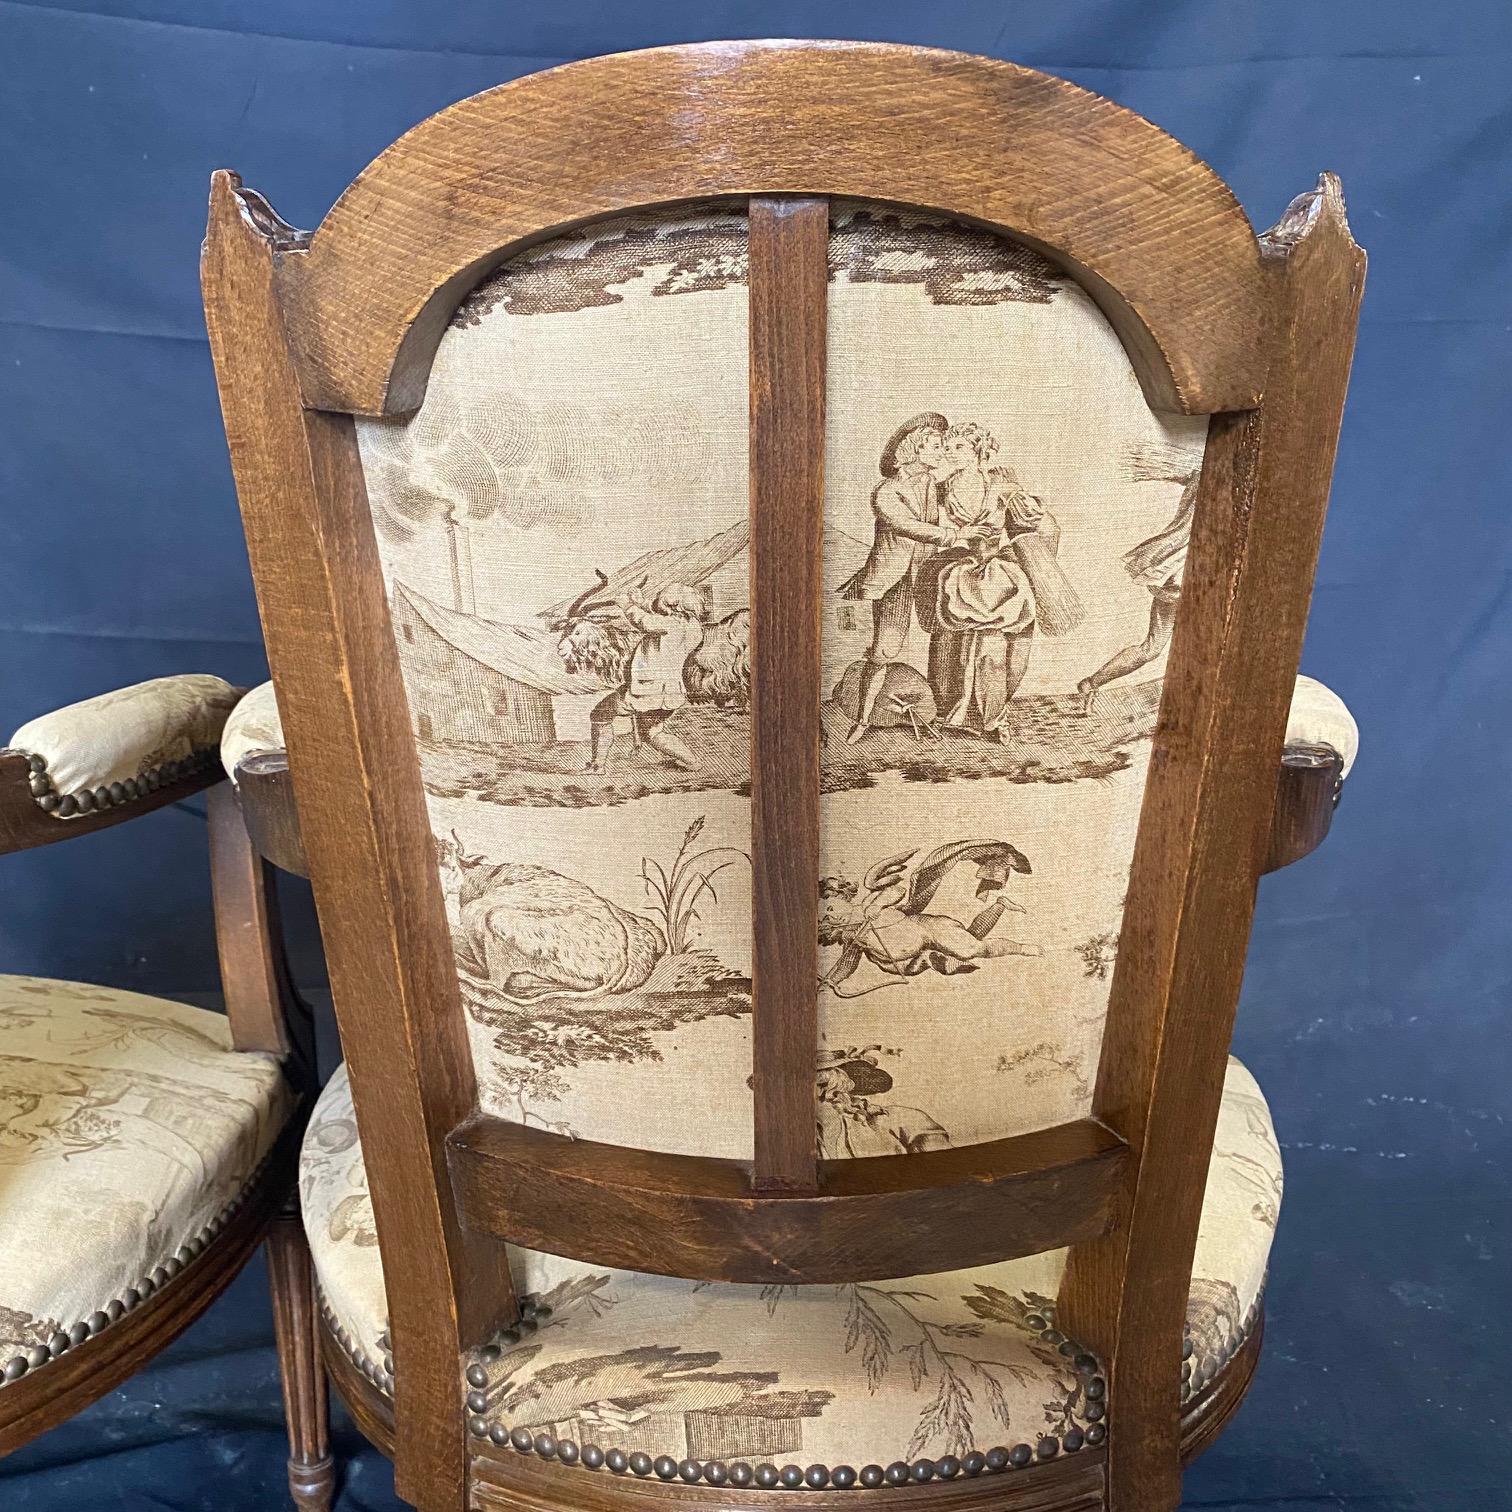 Il est rare de trouver une tapisserie d'origine en aussi bon état que celle de ces étonnants fauteuils ou chaises en toile des débuts de la France.  Fabriqués au XIXe siècle, ces fauteuils en noyer de style Louis XVI ajouteront de l'élégance à